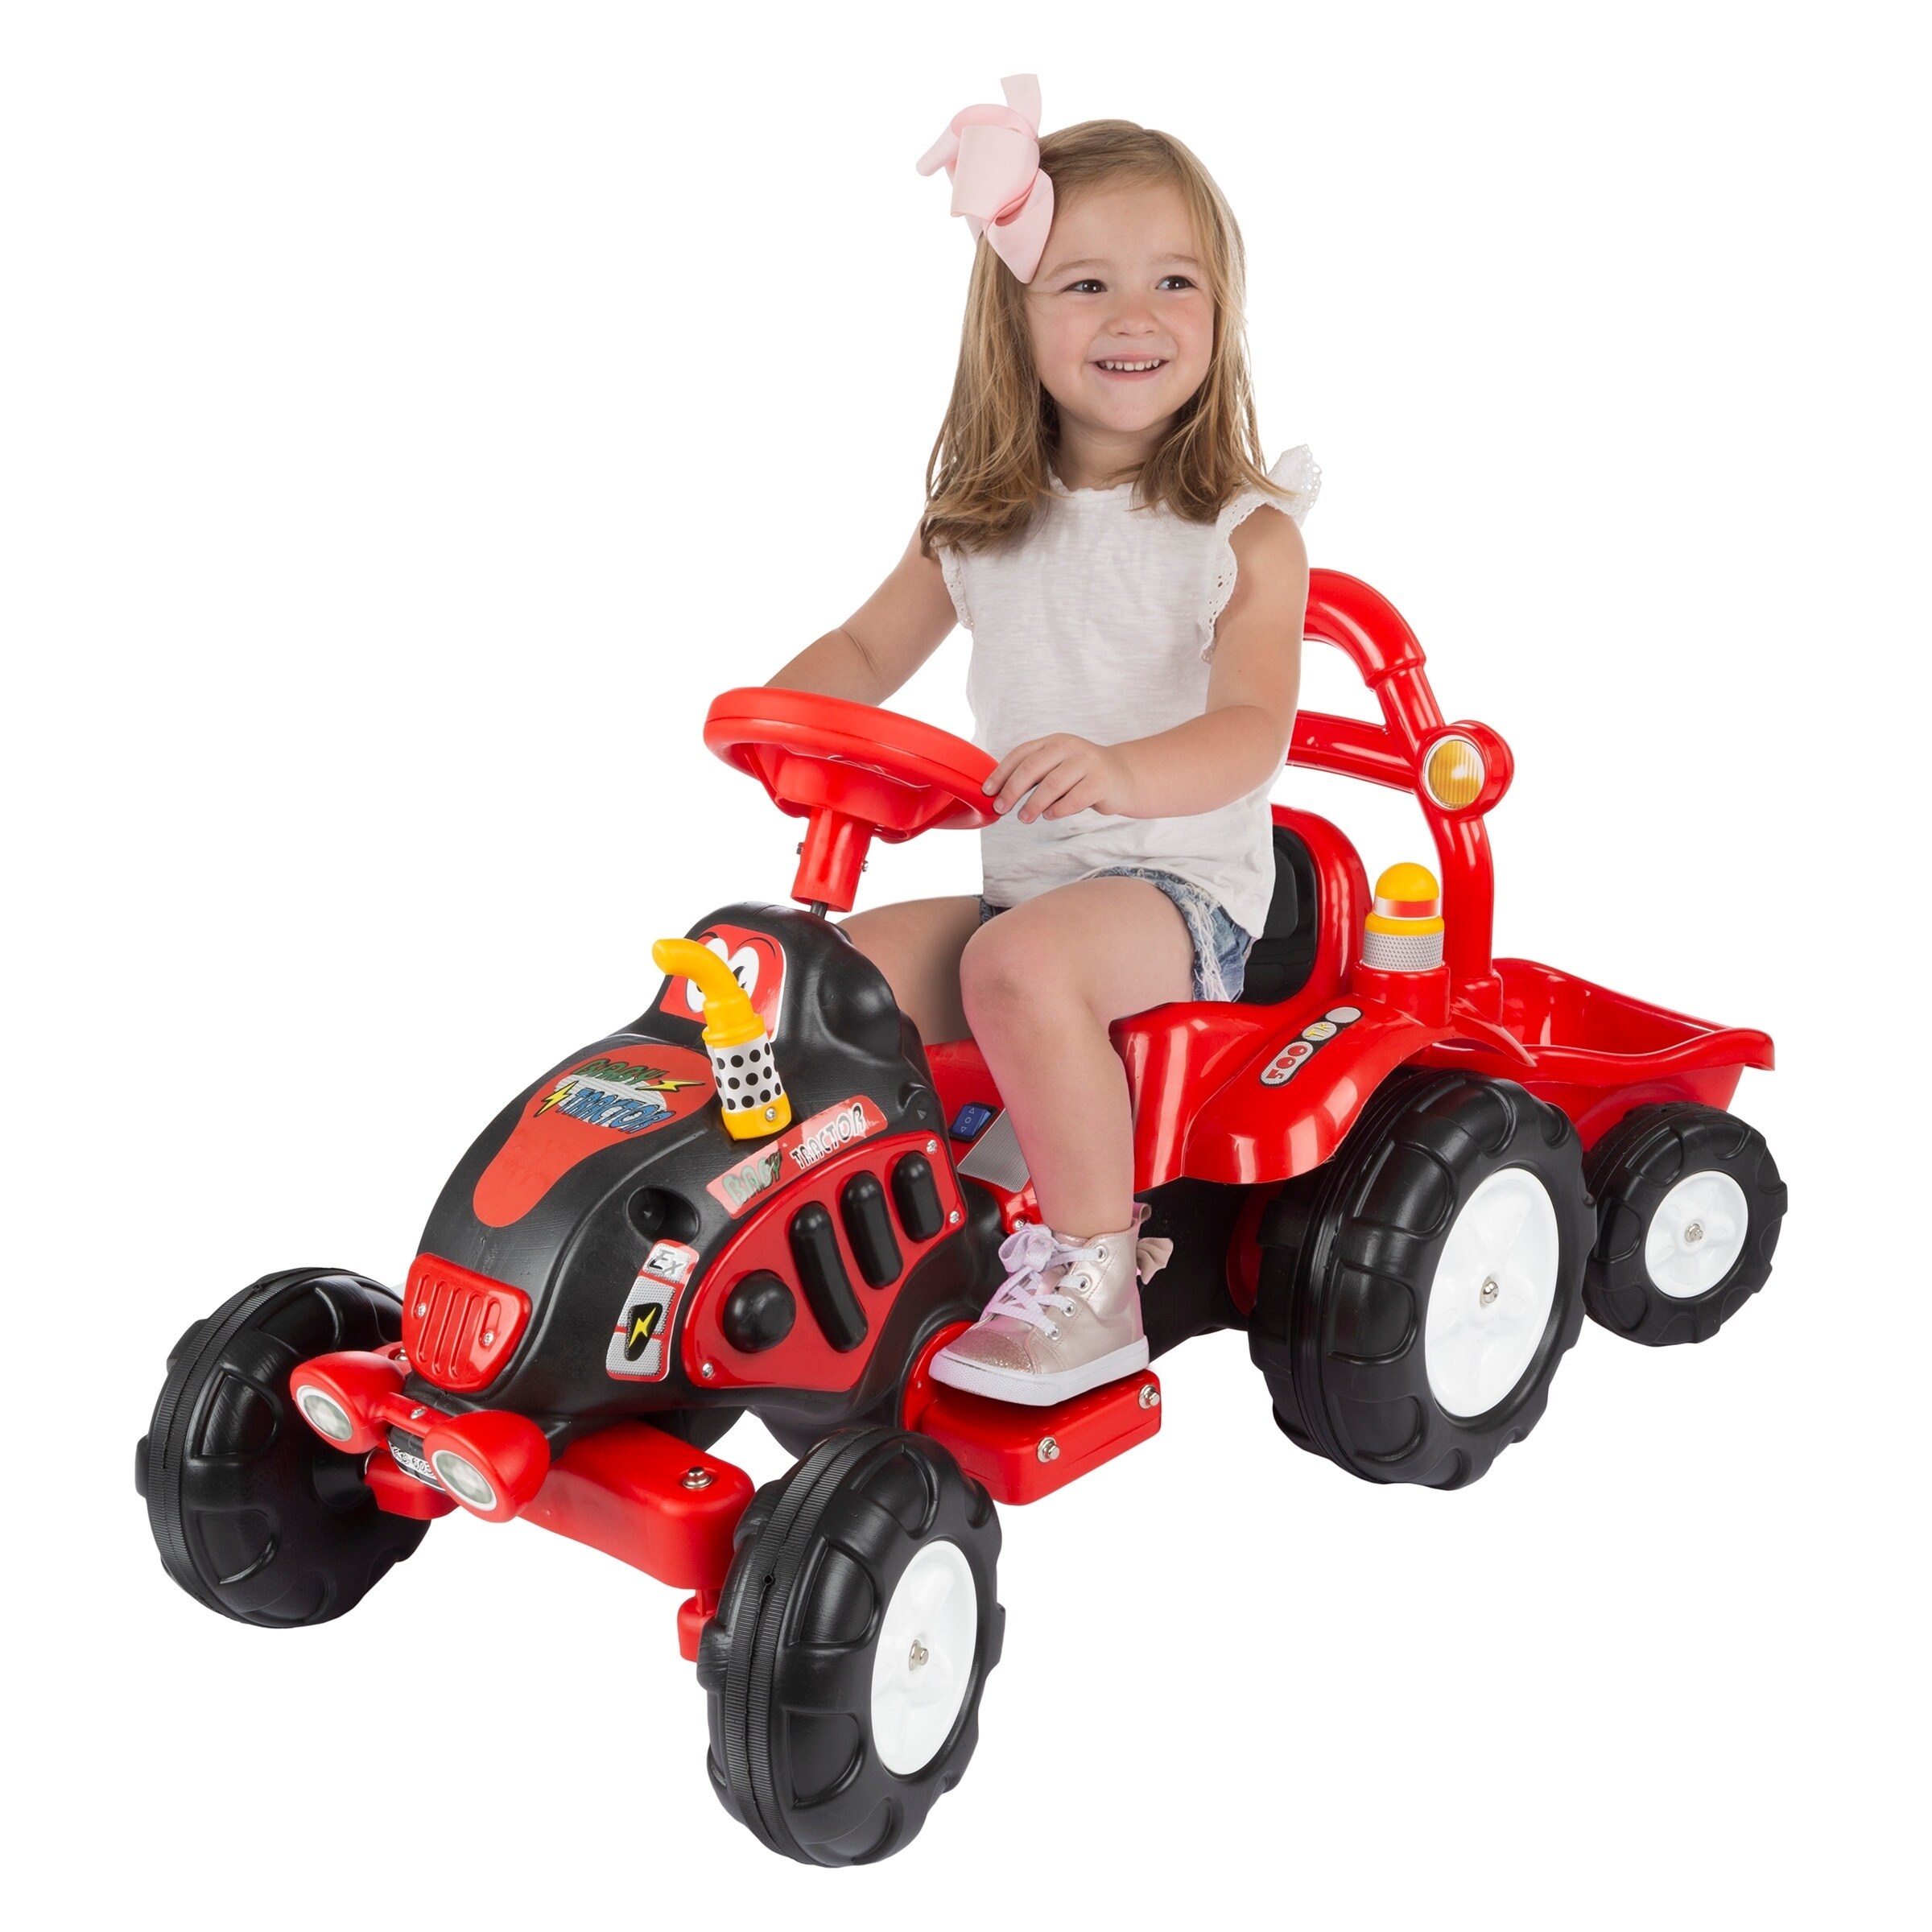 motorized riding toys